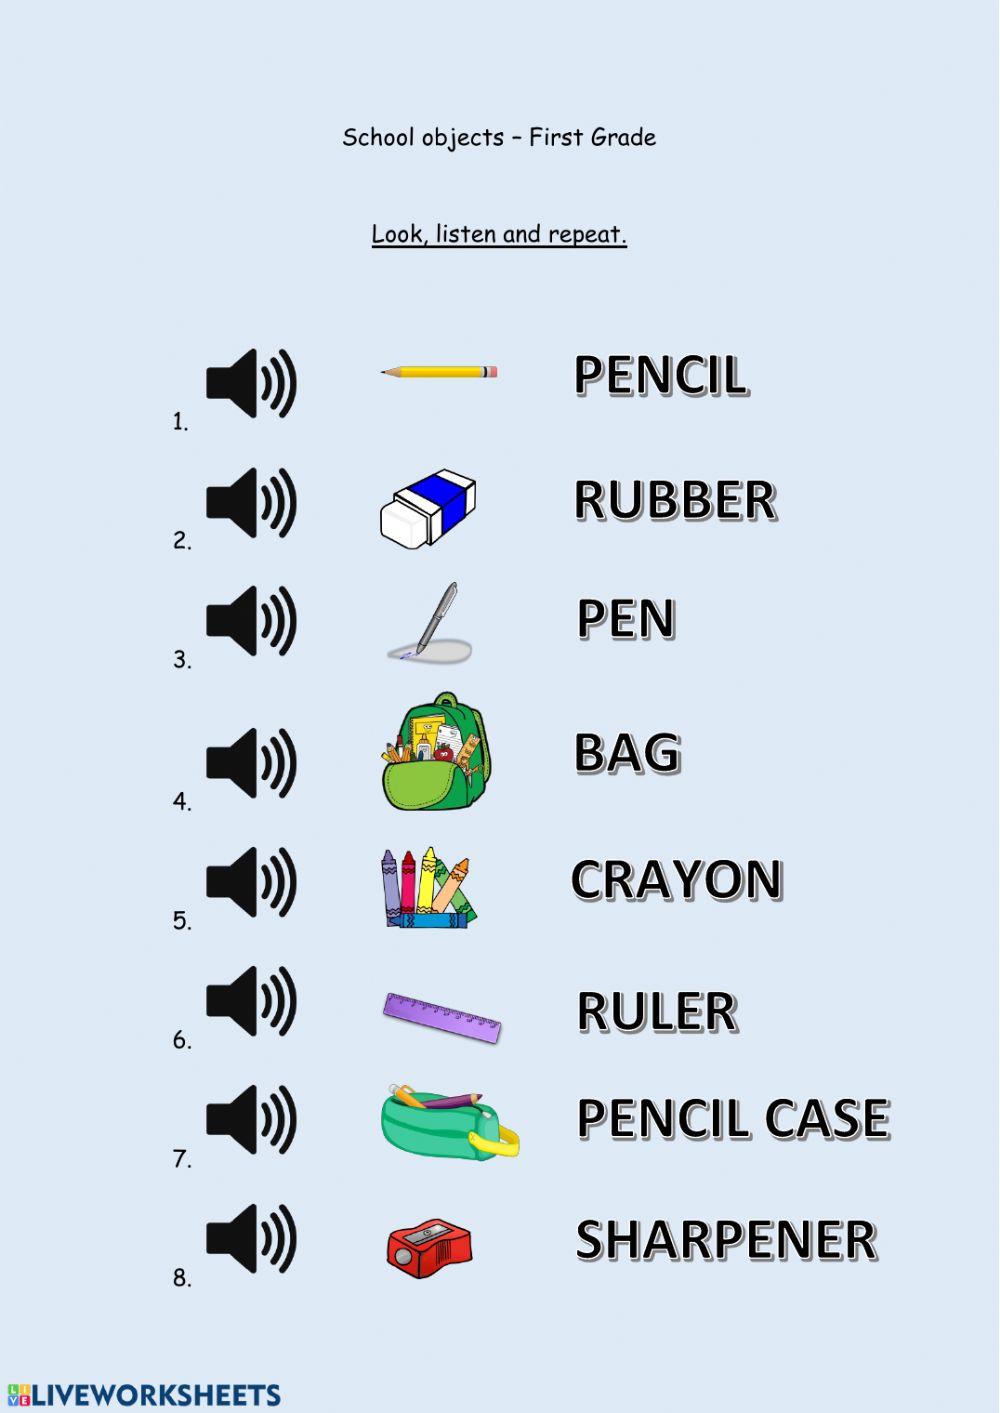 School objects - First Grade